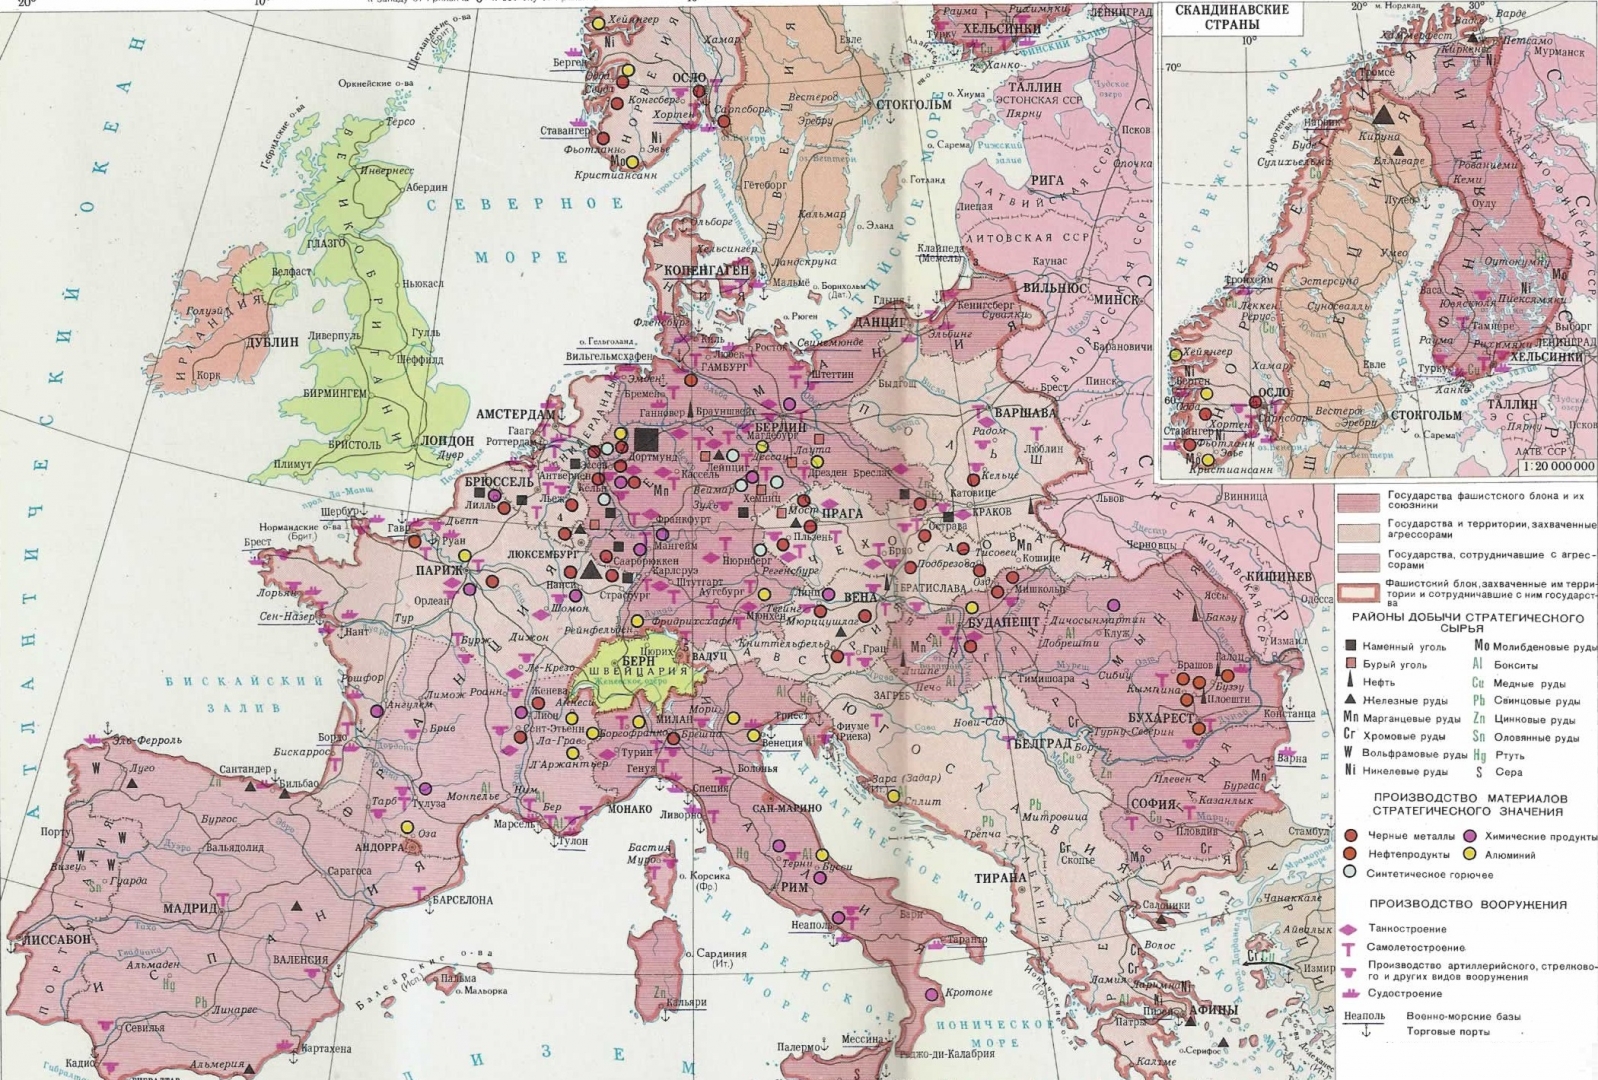 Карта германии во время второй мировой войны 1941 1945